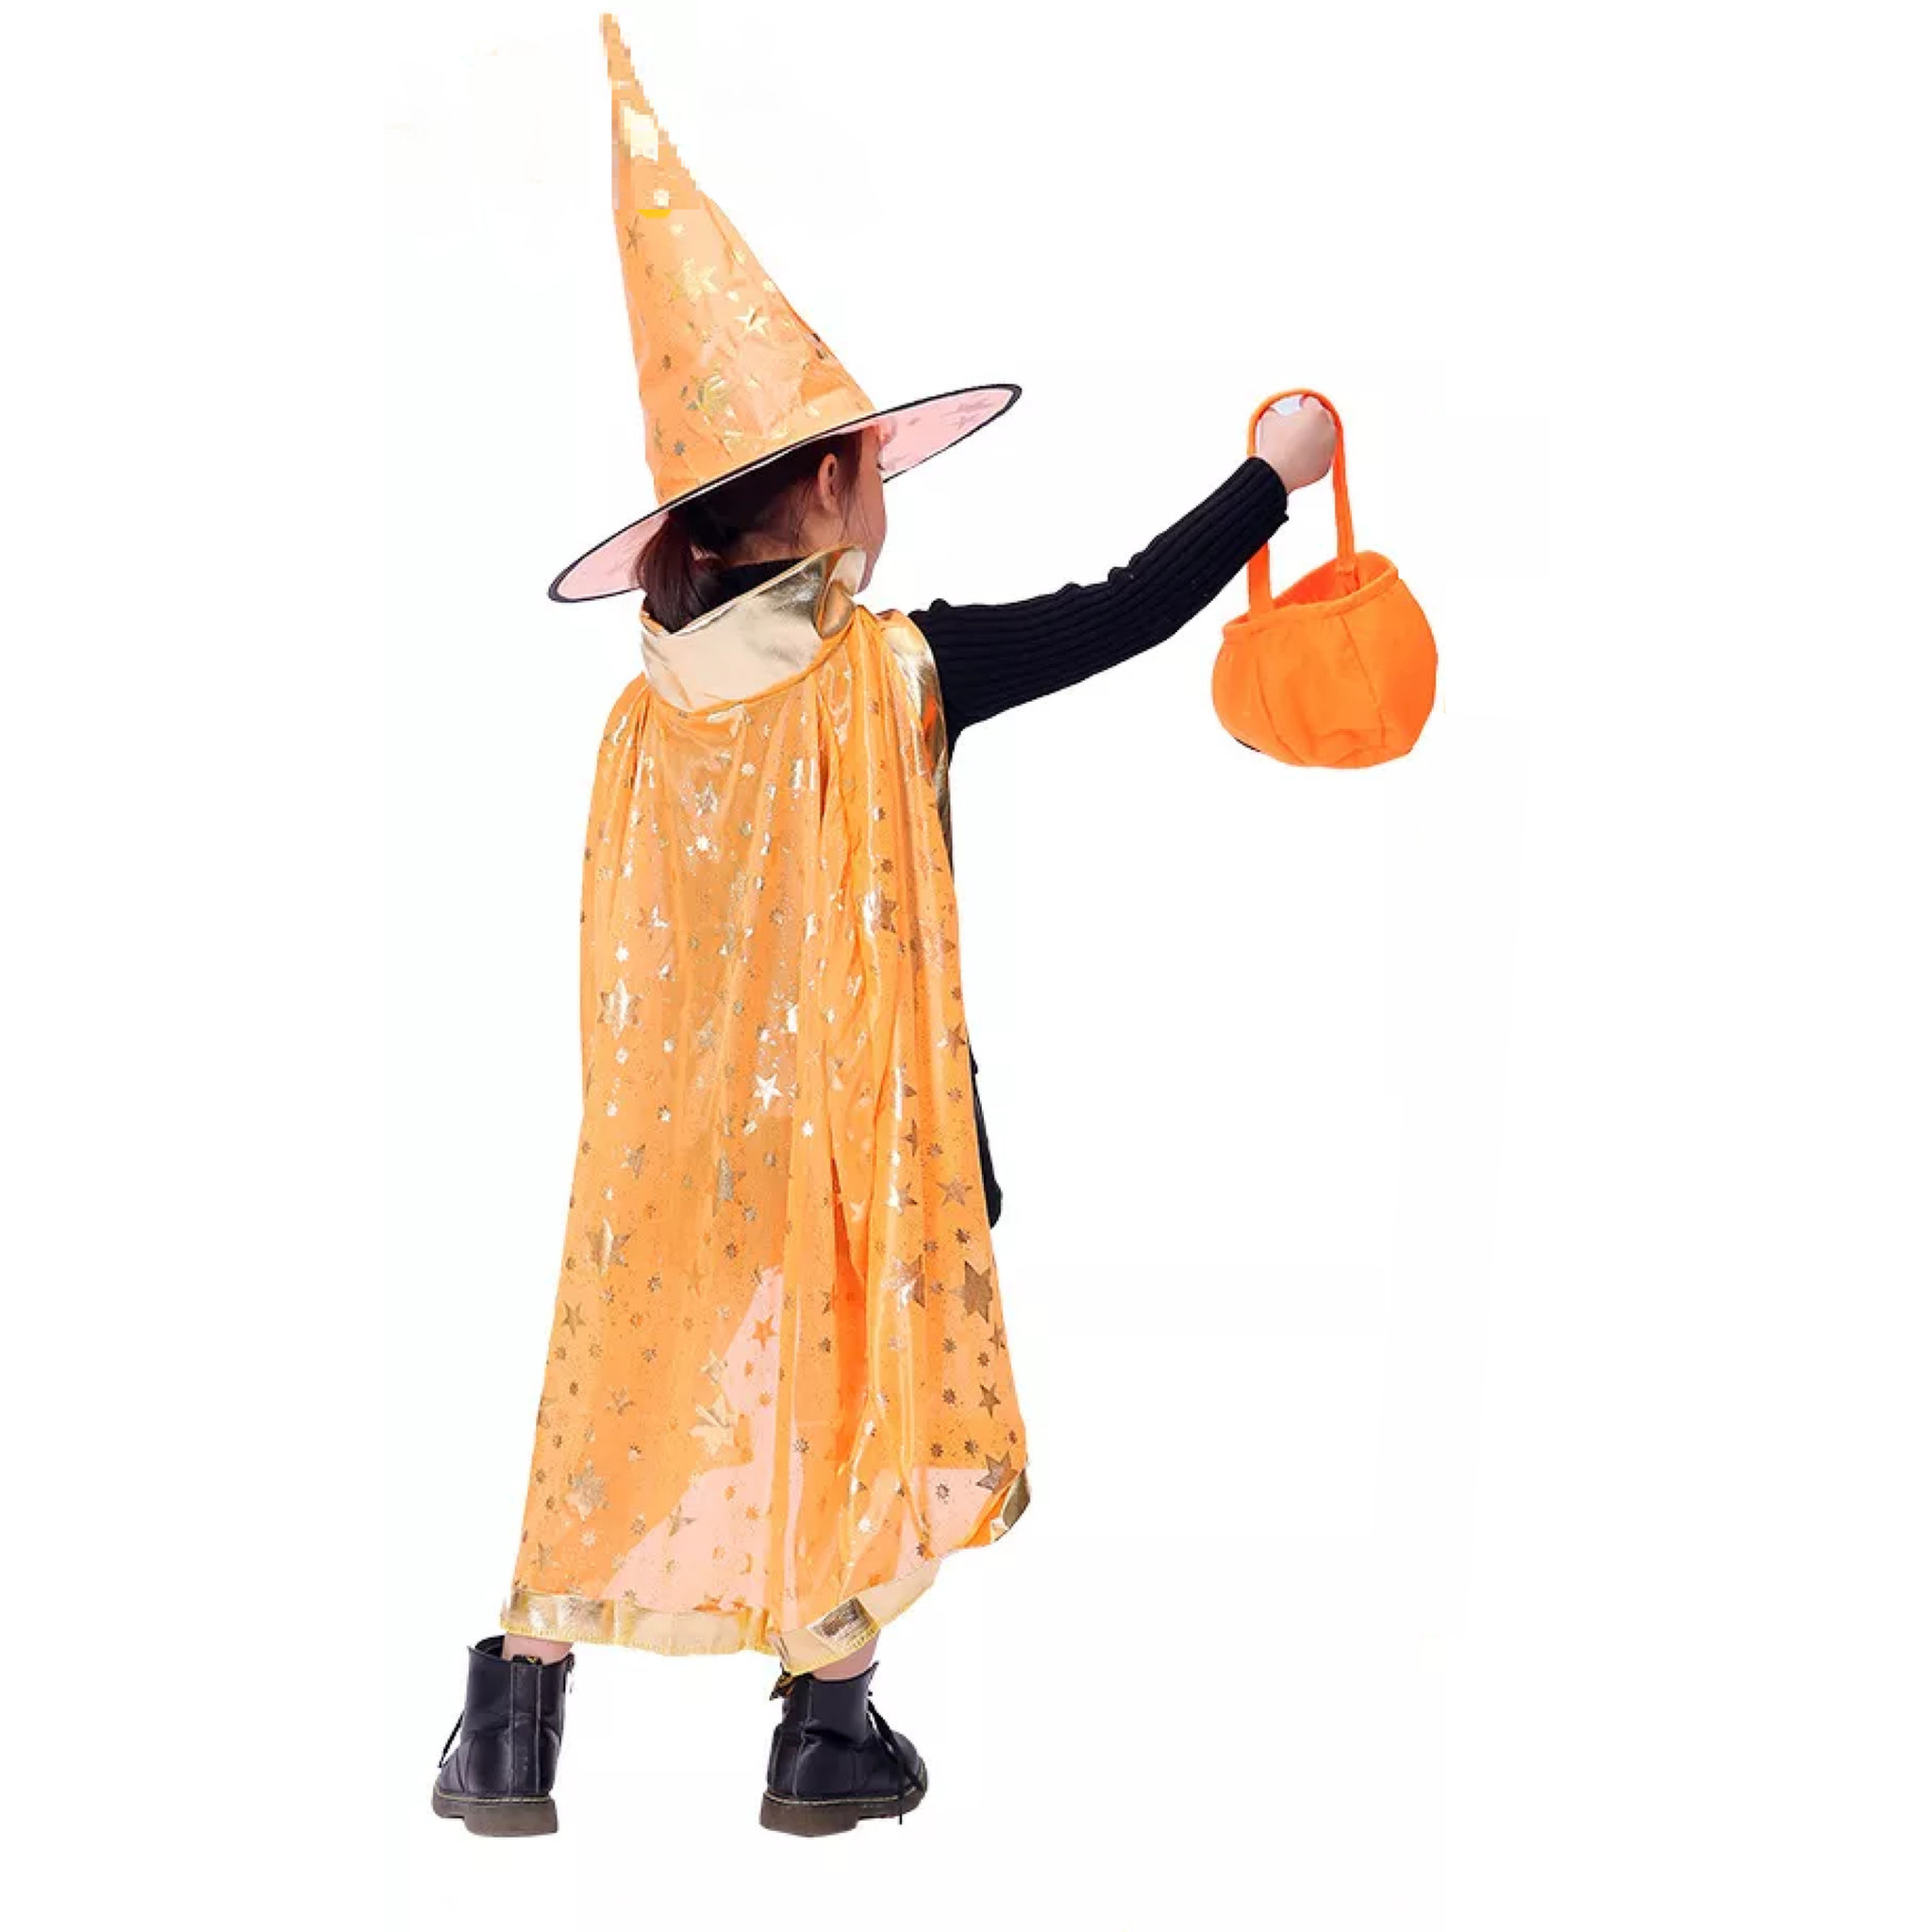 gewicht Bezwaar Hoogte Jobber - Cape - Hoed - Tovenaar kostuum – Oranje - Verkleedkleren -  Jobbershop